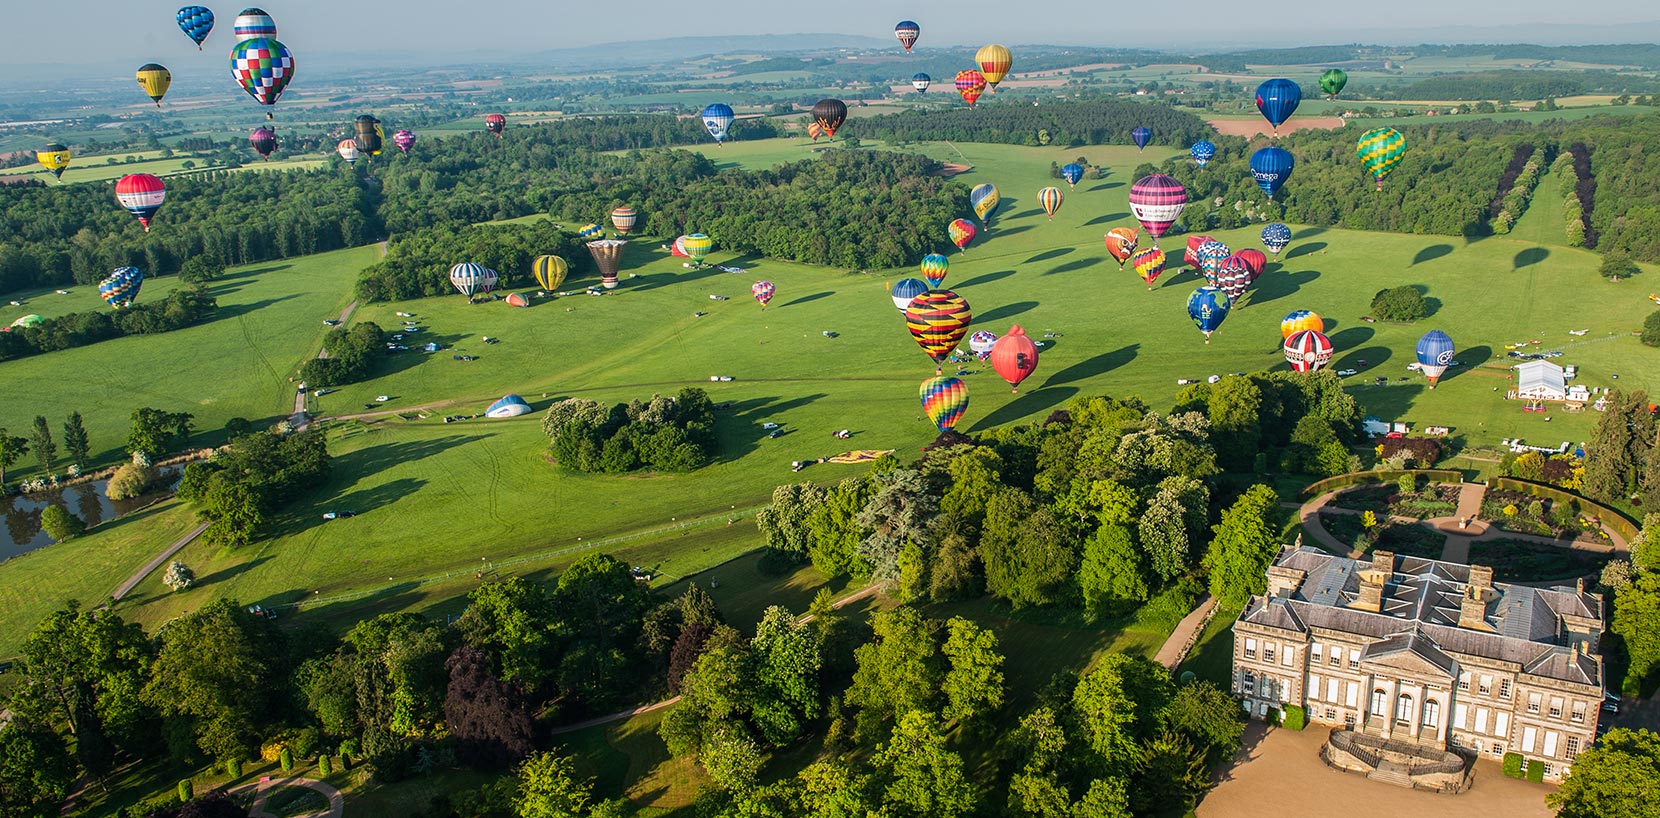 Air balloon show at Ragley